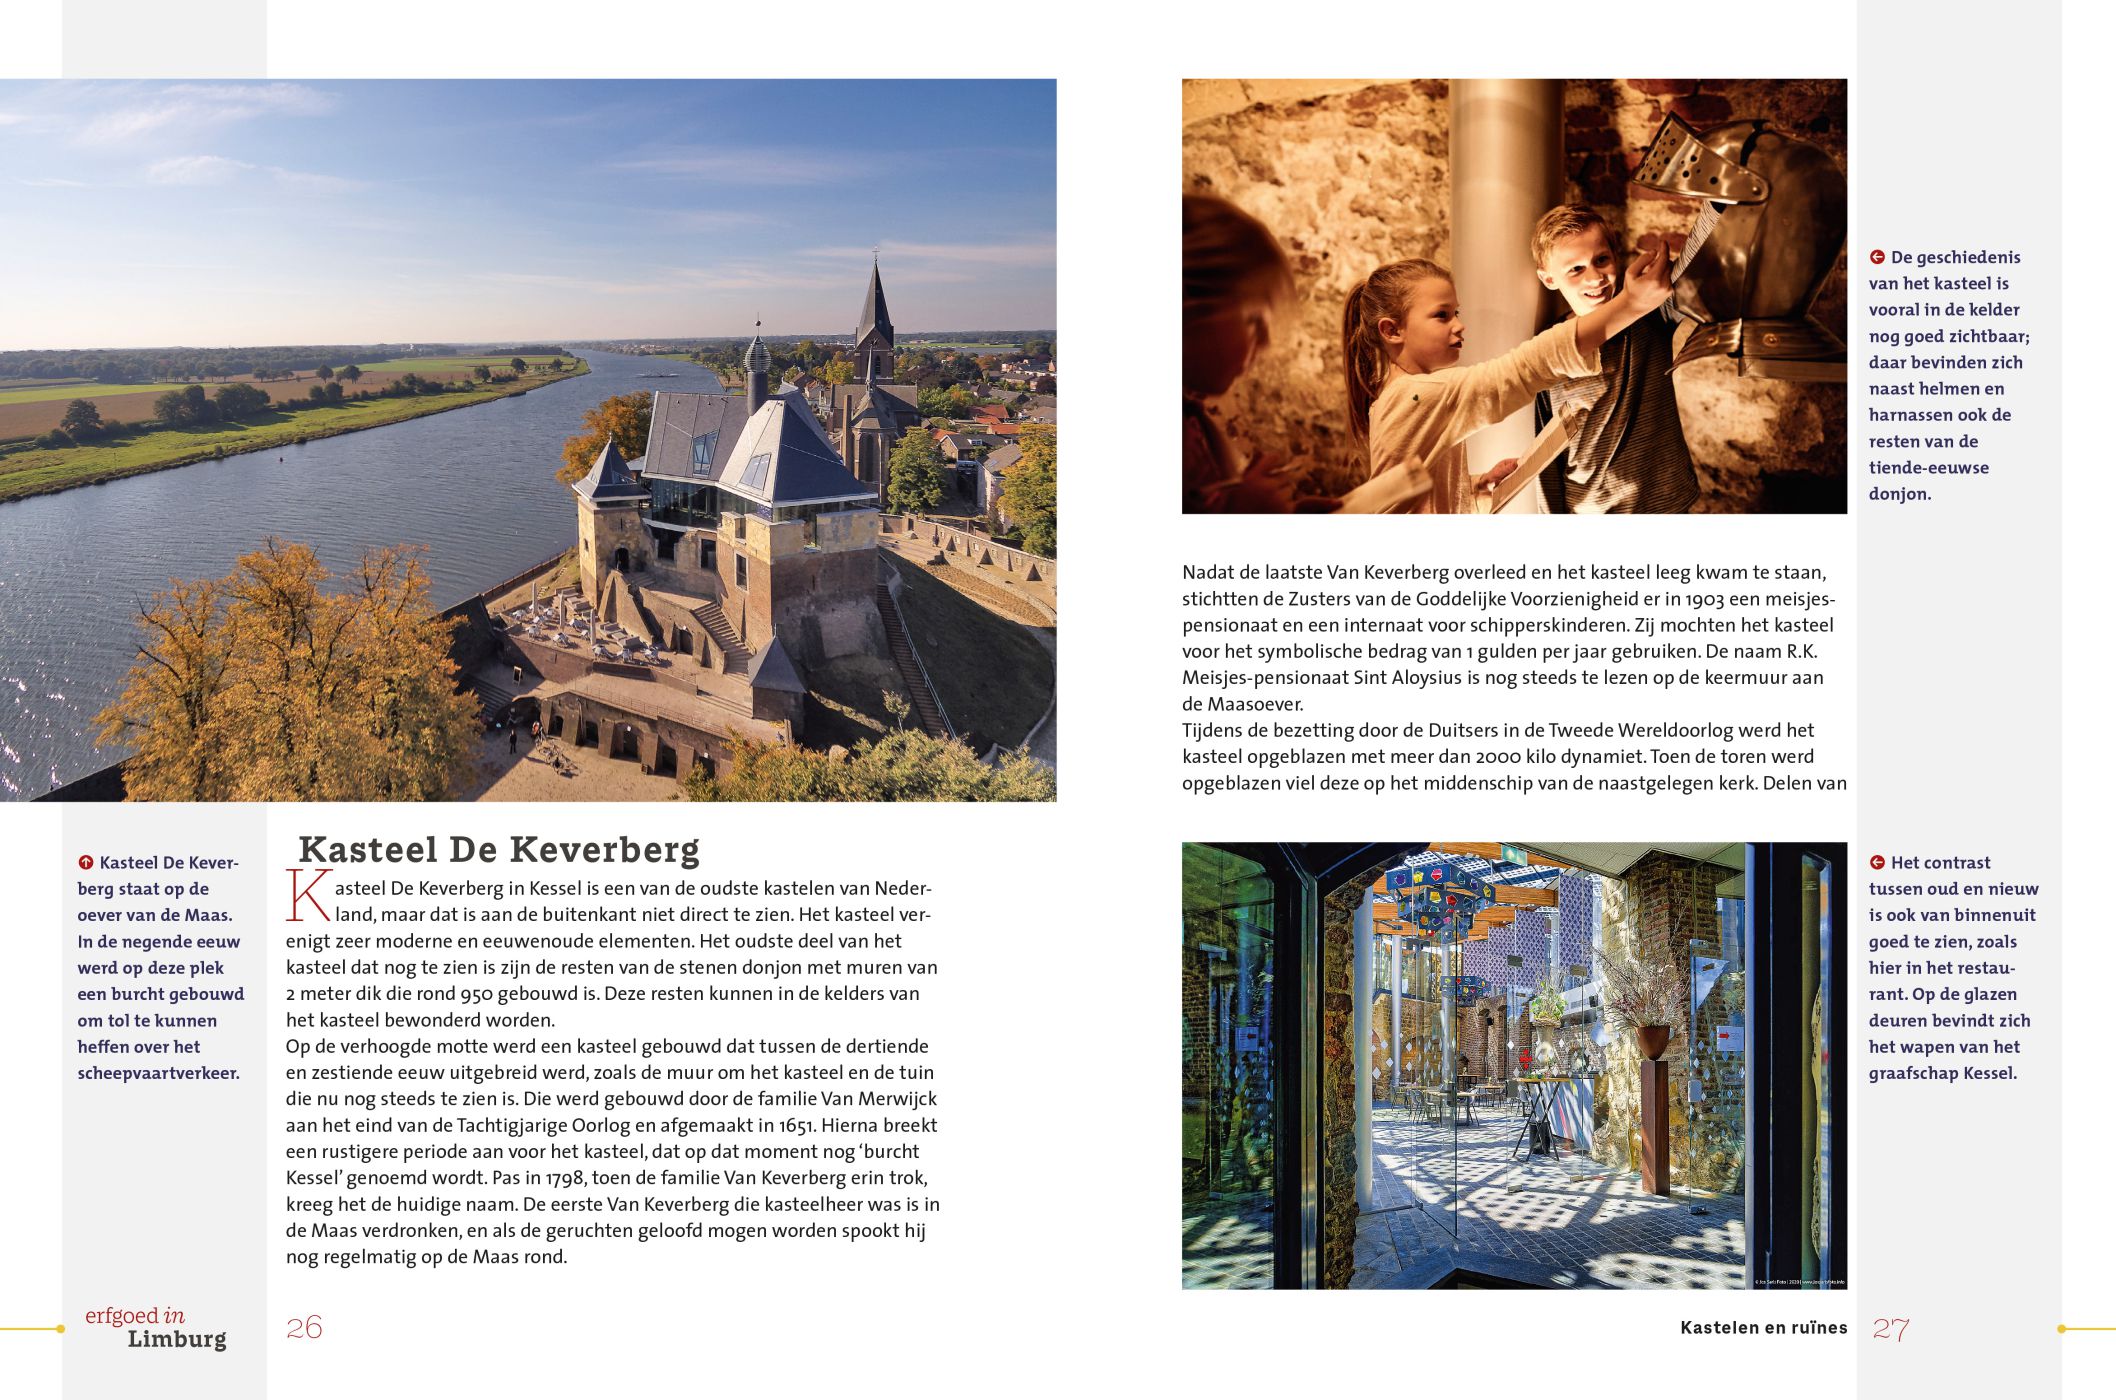 Inkijkexemplaar van het boek: <em>Erfgoed in Limburg. Kastelen en ruïnes</em> - © Uitgeverij Matrijs